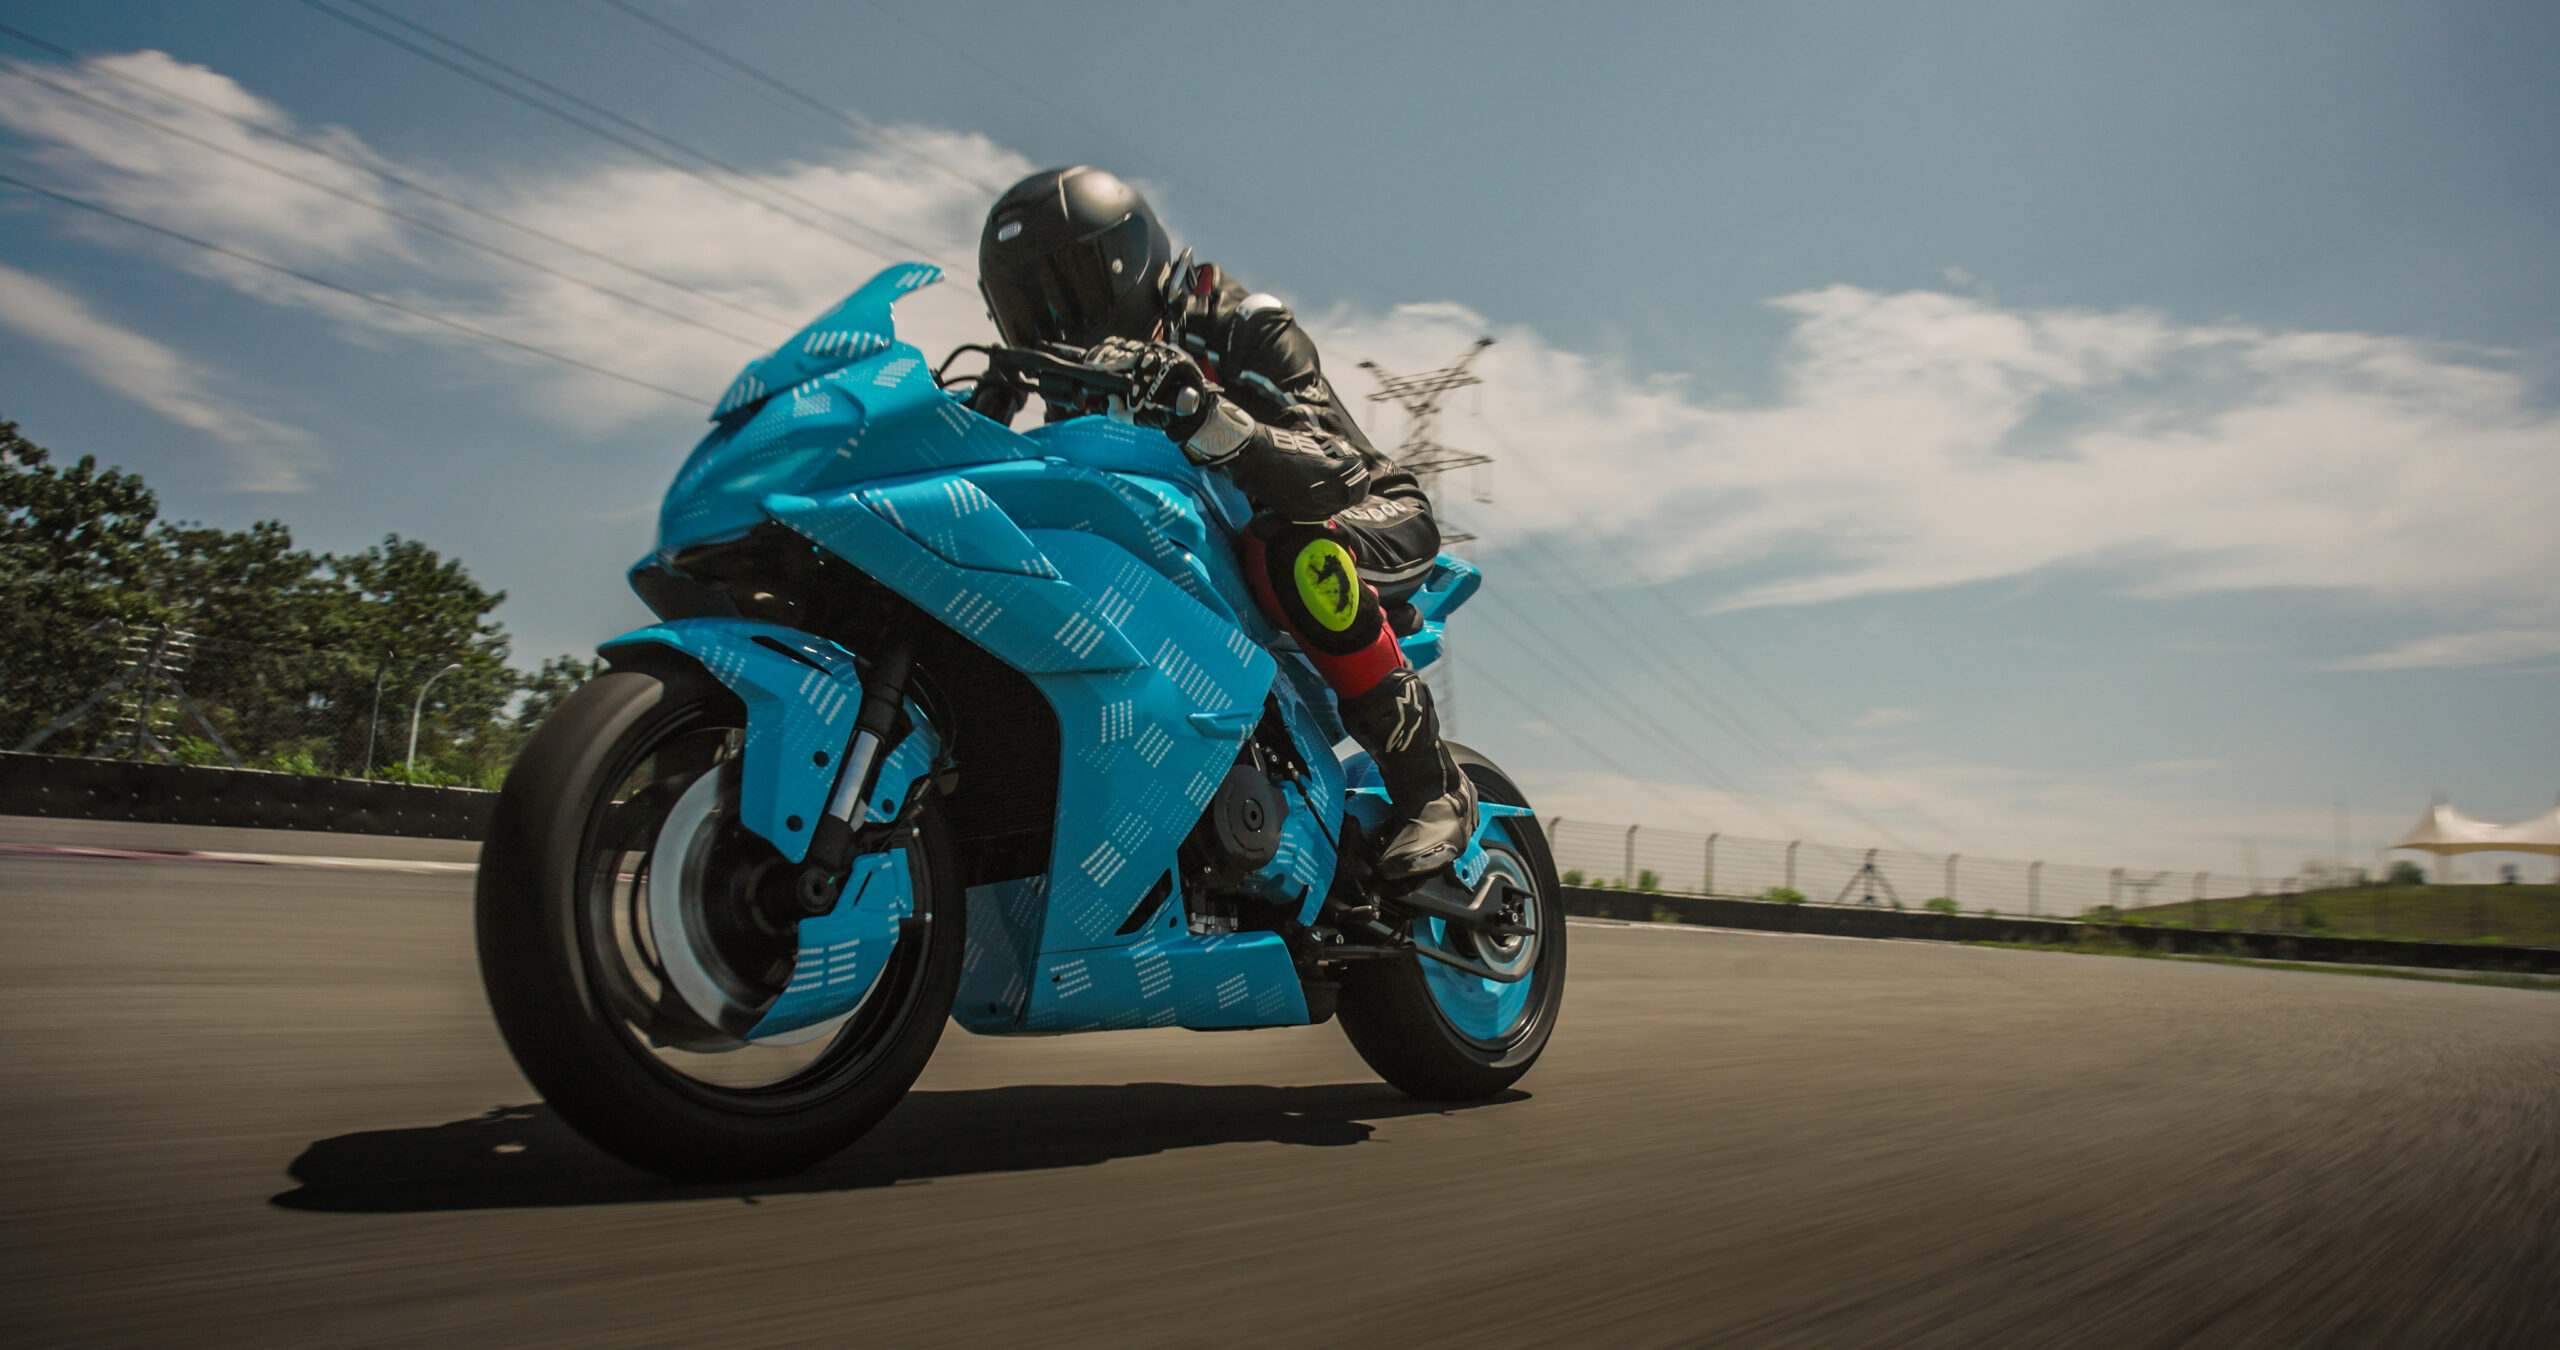 Kawasaki Moto 4, Motas e UTV Novas em Portugal - preços e características -  Andar de Moto